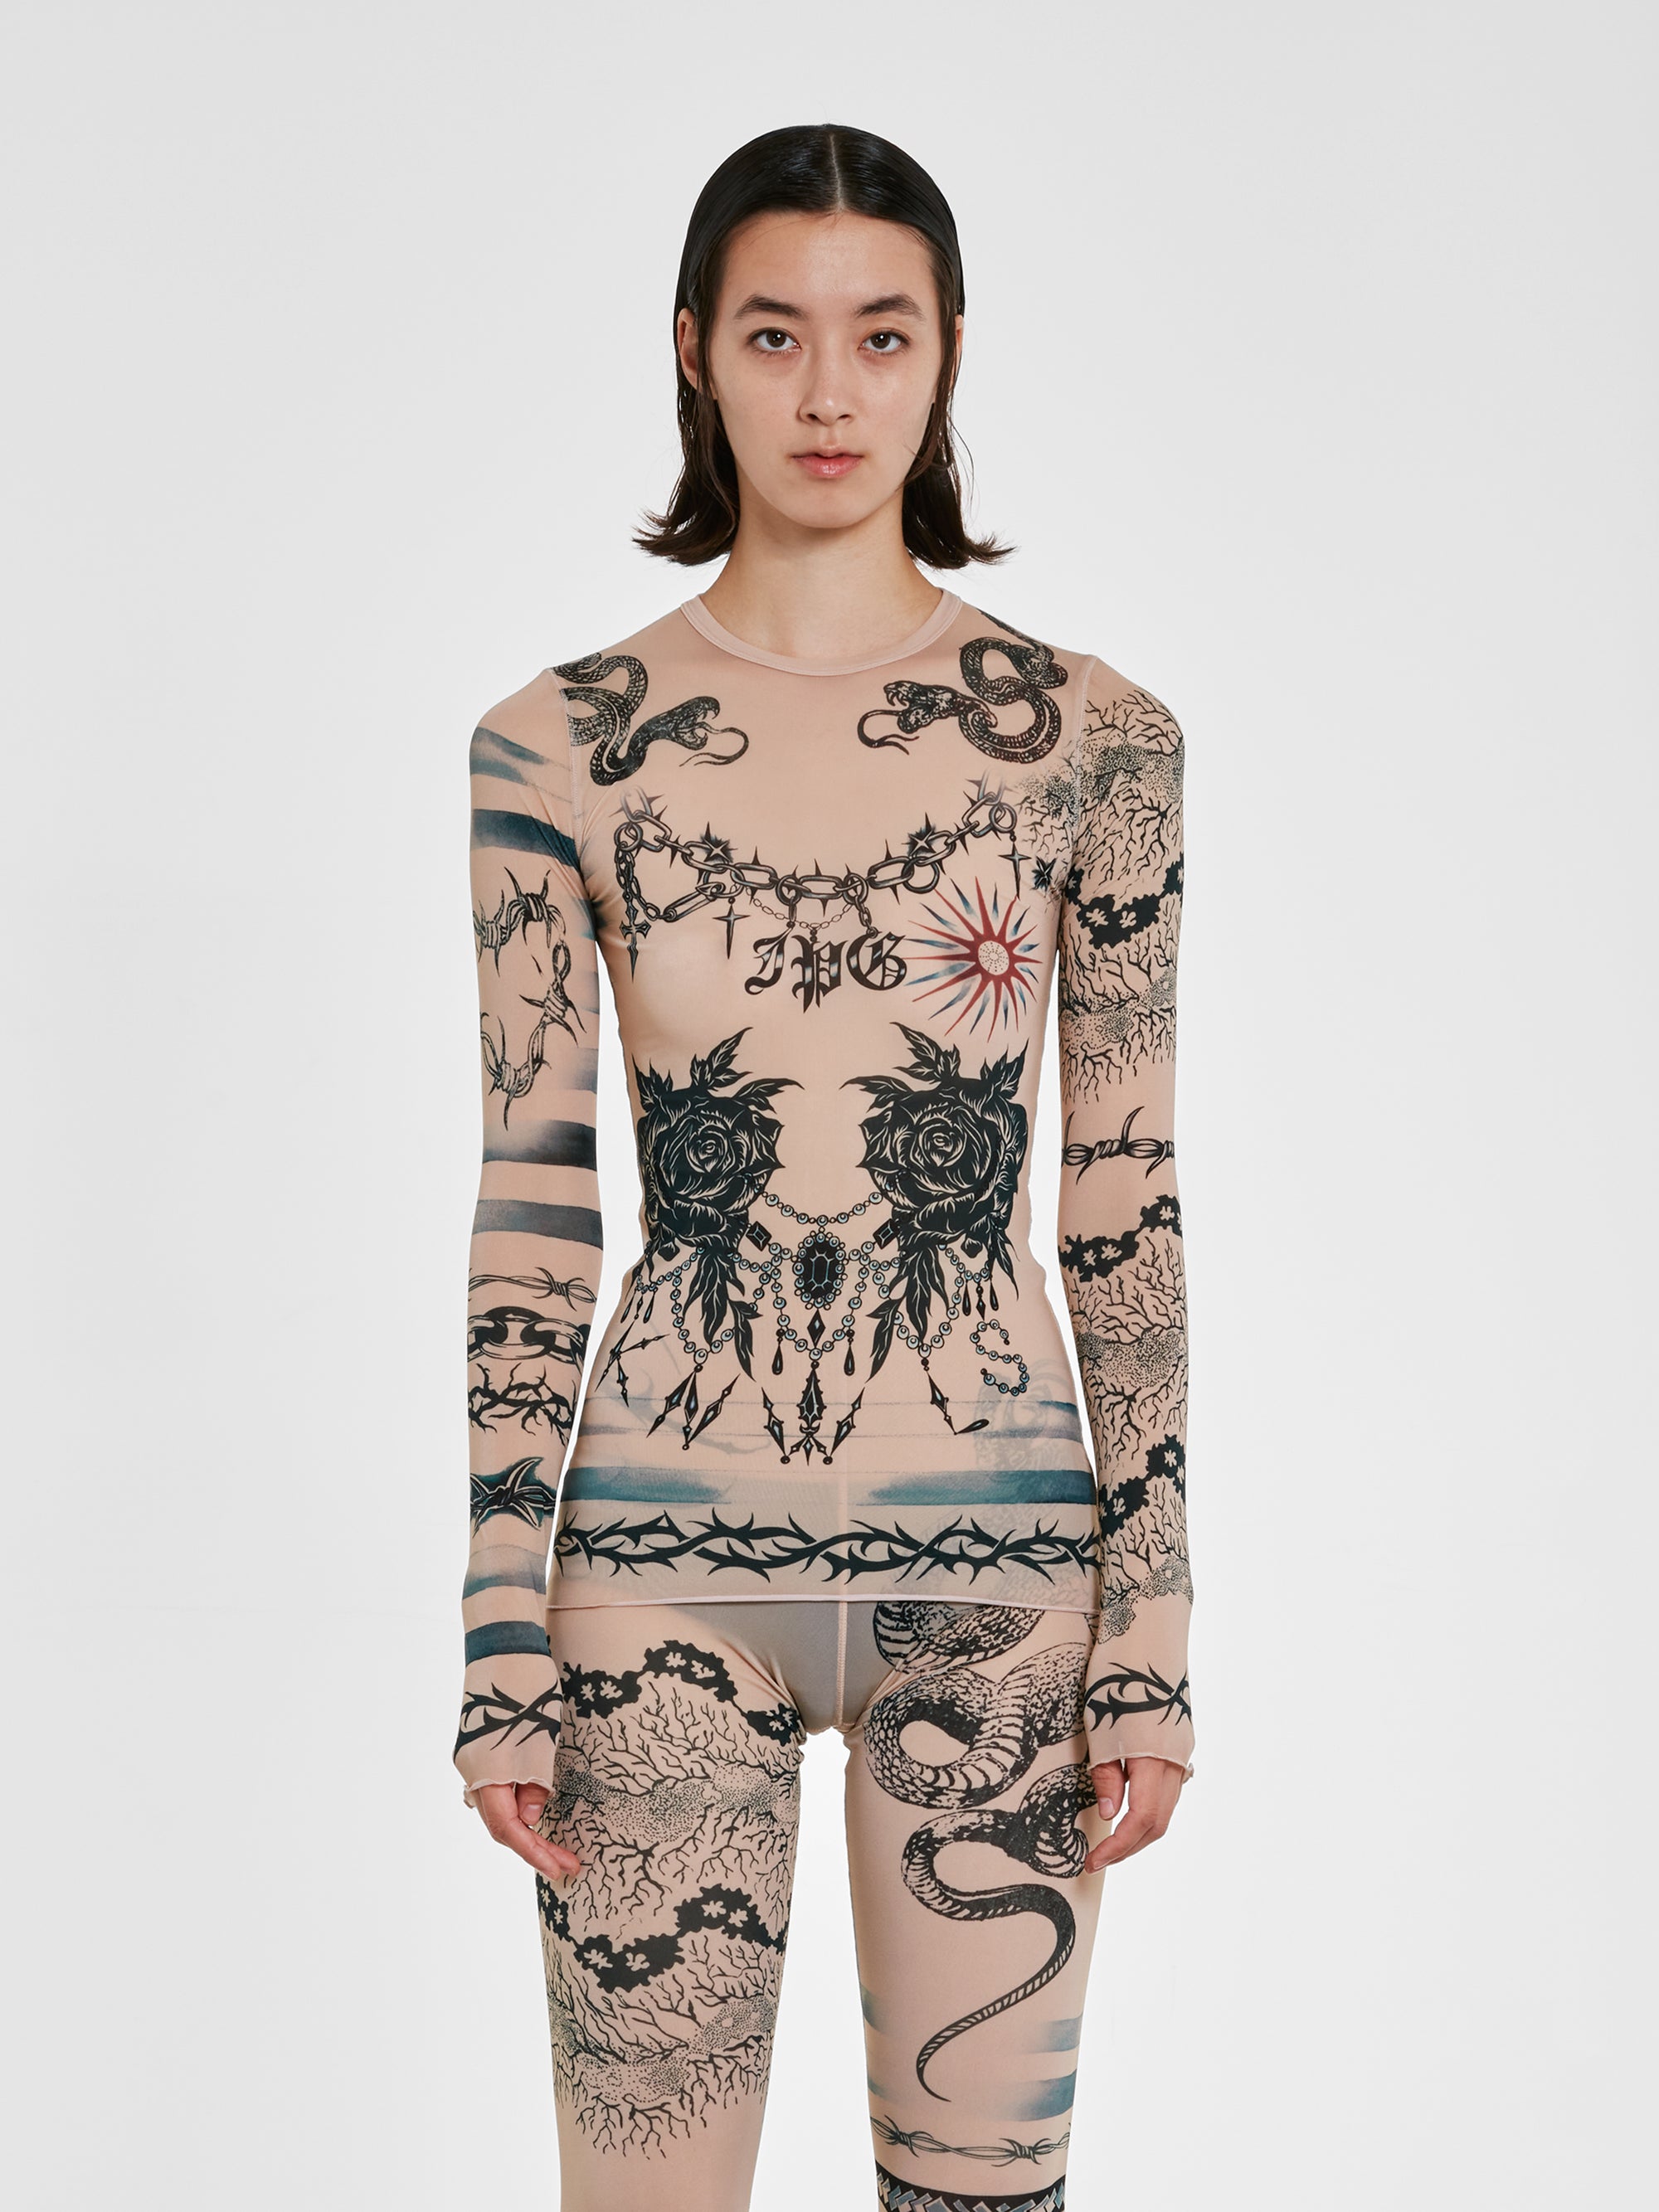 Jean Paul Gaultier - KNWLS Women’s Trompe L’Oeil Tattoo Long Sleeve Top - (Nude/Grey/Black) view 1